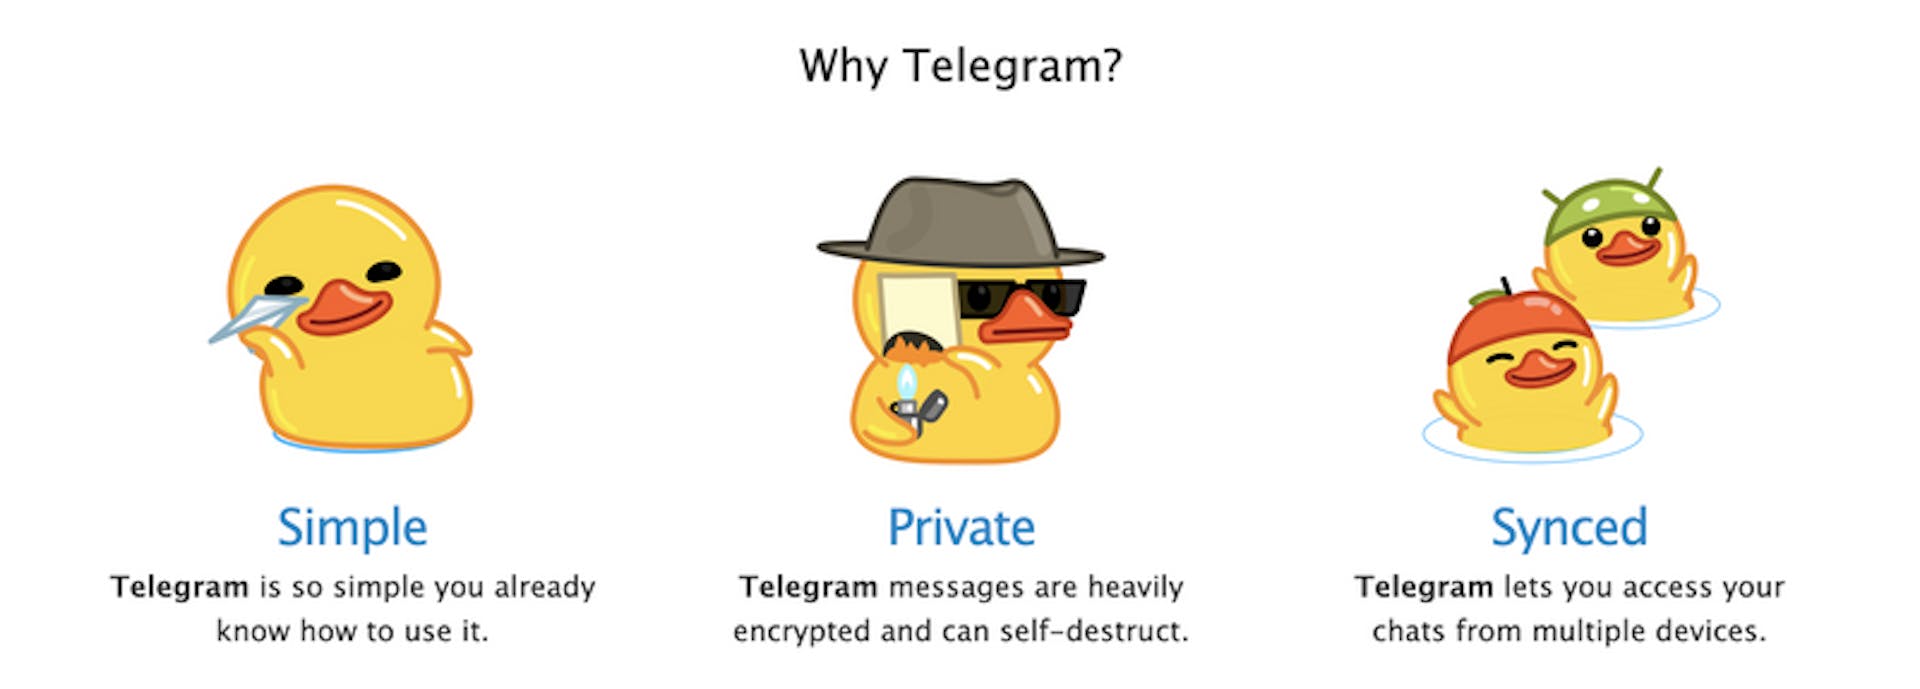 Screengrab từ trang web của Telegram quảng cáo quyền riêng tư mà họ cung cấp cho người dùng. Cezary đã liên hệ với Telegram để cung cấp các ví dụ chi tiết về một số cuộc trò chuyện mà anh phát hiện ra và công ty đã không trả lời các truy vấn của anh. Nhưng ngay sau khi anh ấy liên hệ, mười trong số các kênh mà anh ấy đã hỏi đã ngừng hoạt động, với một thông báo được đăng nói rằng họ đã vi phạm điều khoản dịch vụ của Telegram. Tín dụng: ProPublica screenngrab từ Telegram